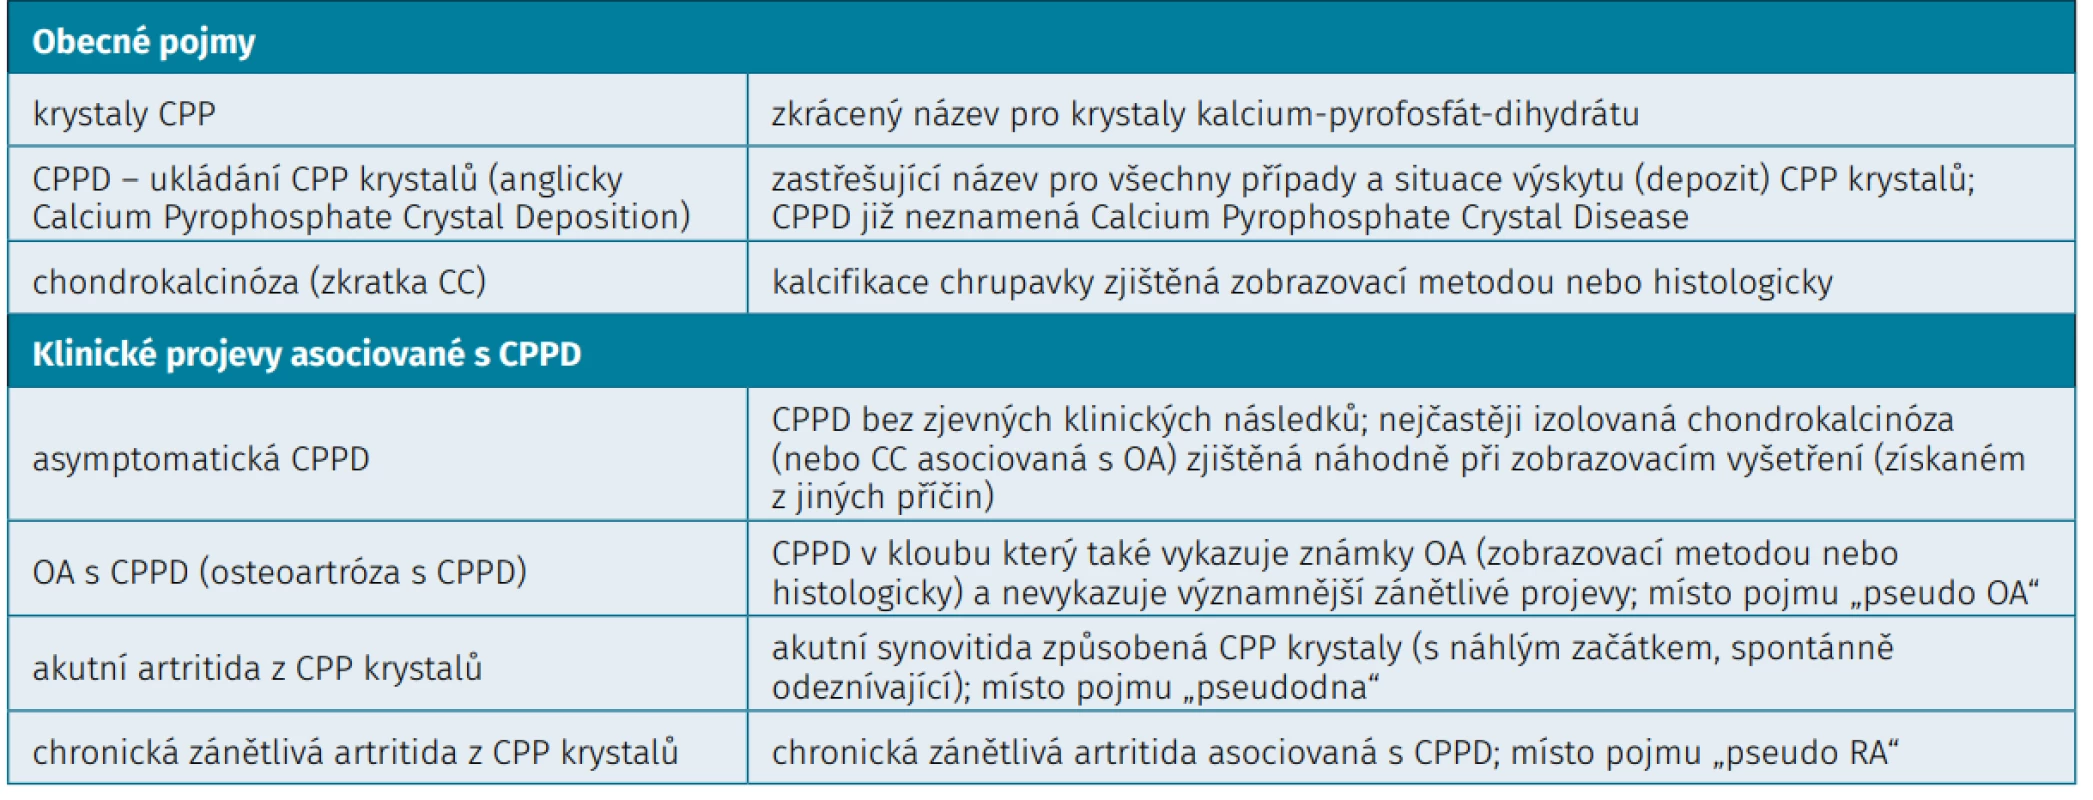  Terminologie nemoci z ukládání CPP krystalů